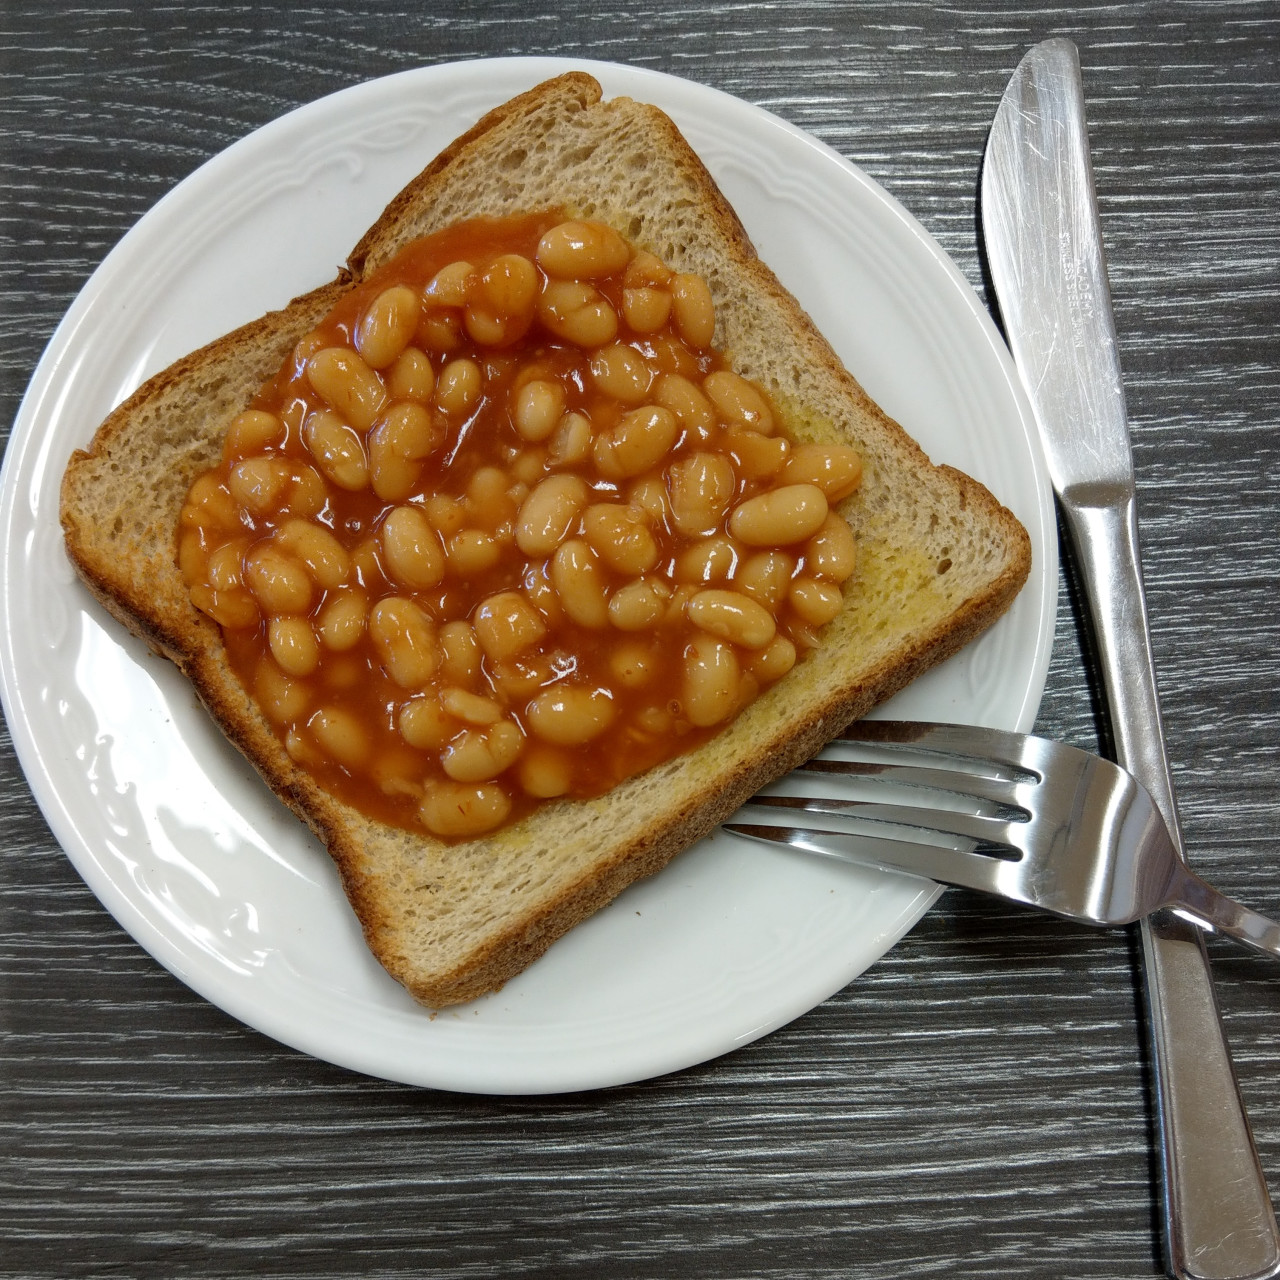 baked-beans-on-toast-2fd454.jpg